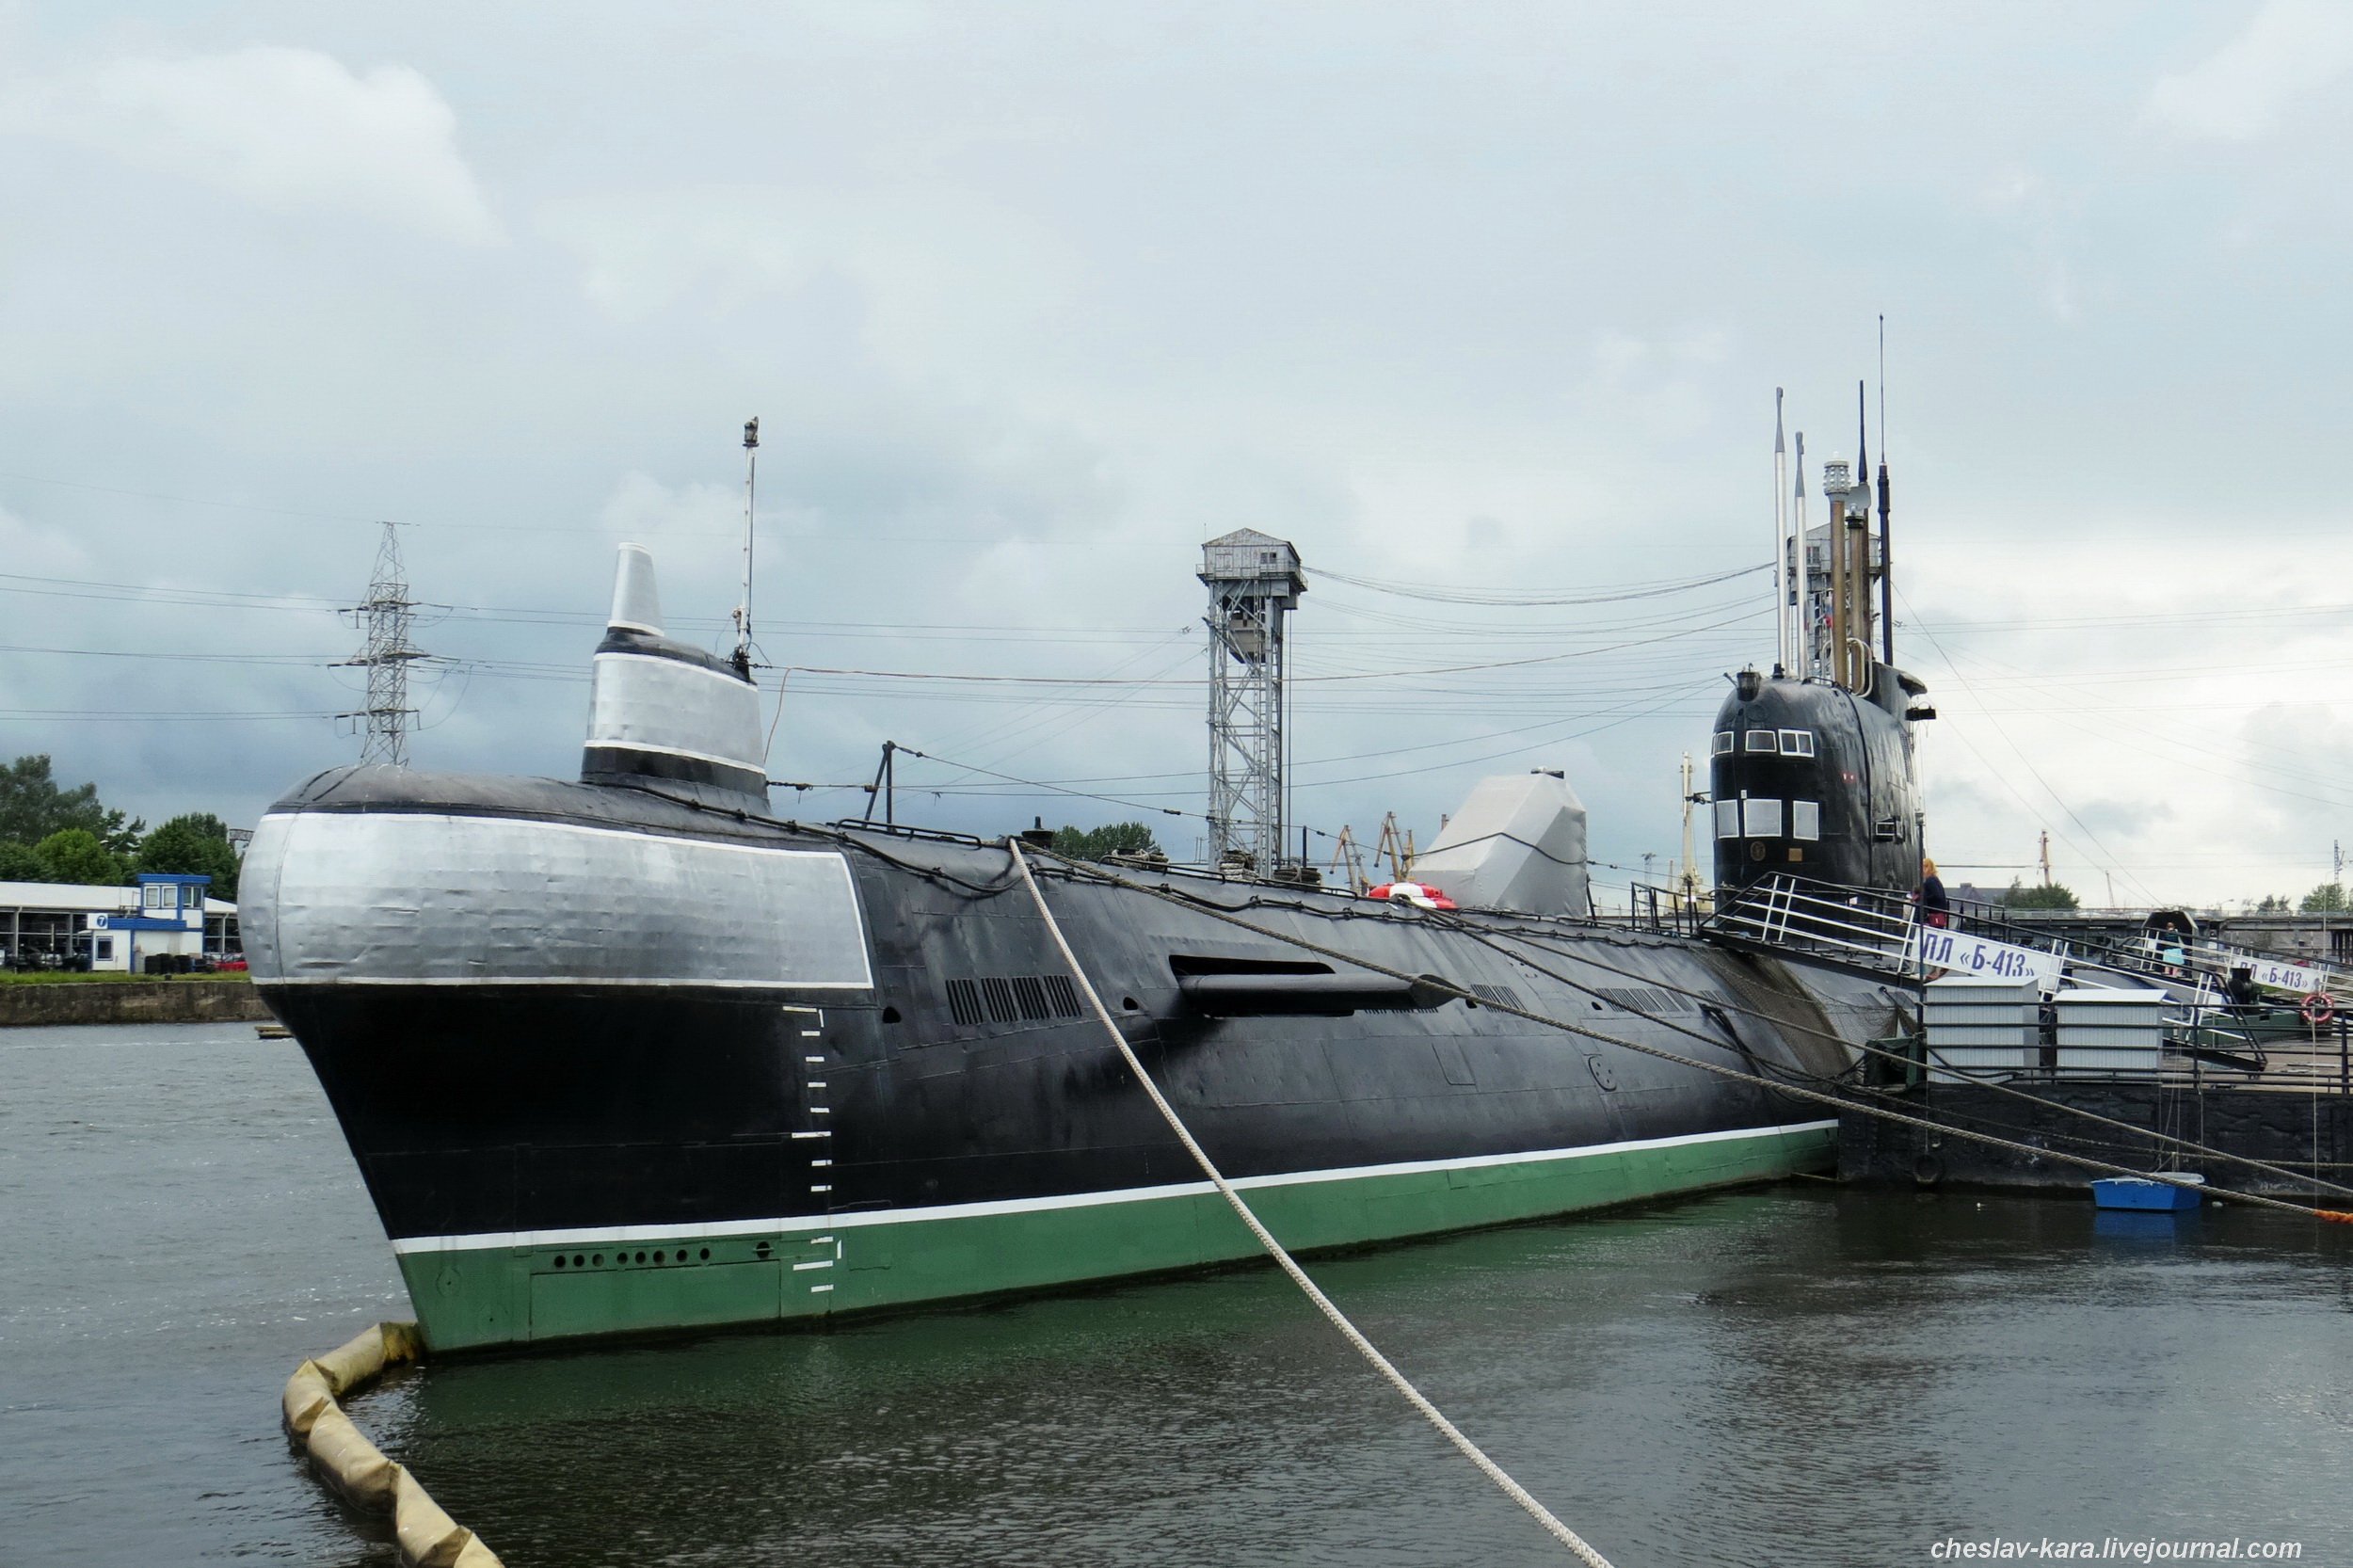 Пл 00. Подводная лодка-музей «б-413». 641б подводная лодка. Подводная лодка б-413 проекта 641. Калининград подводная лодка-музей б-413.